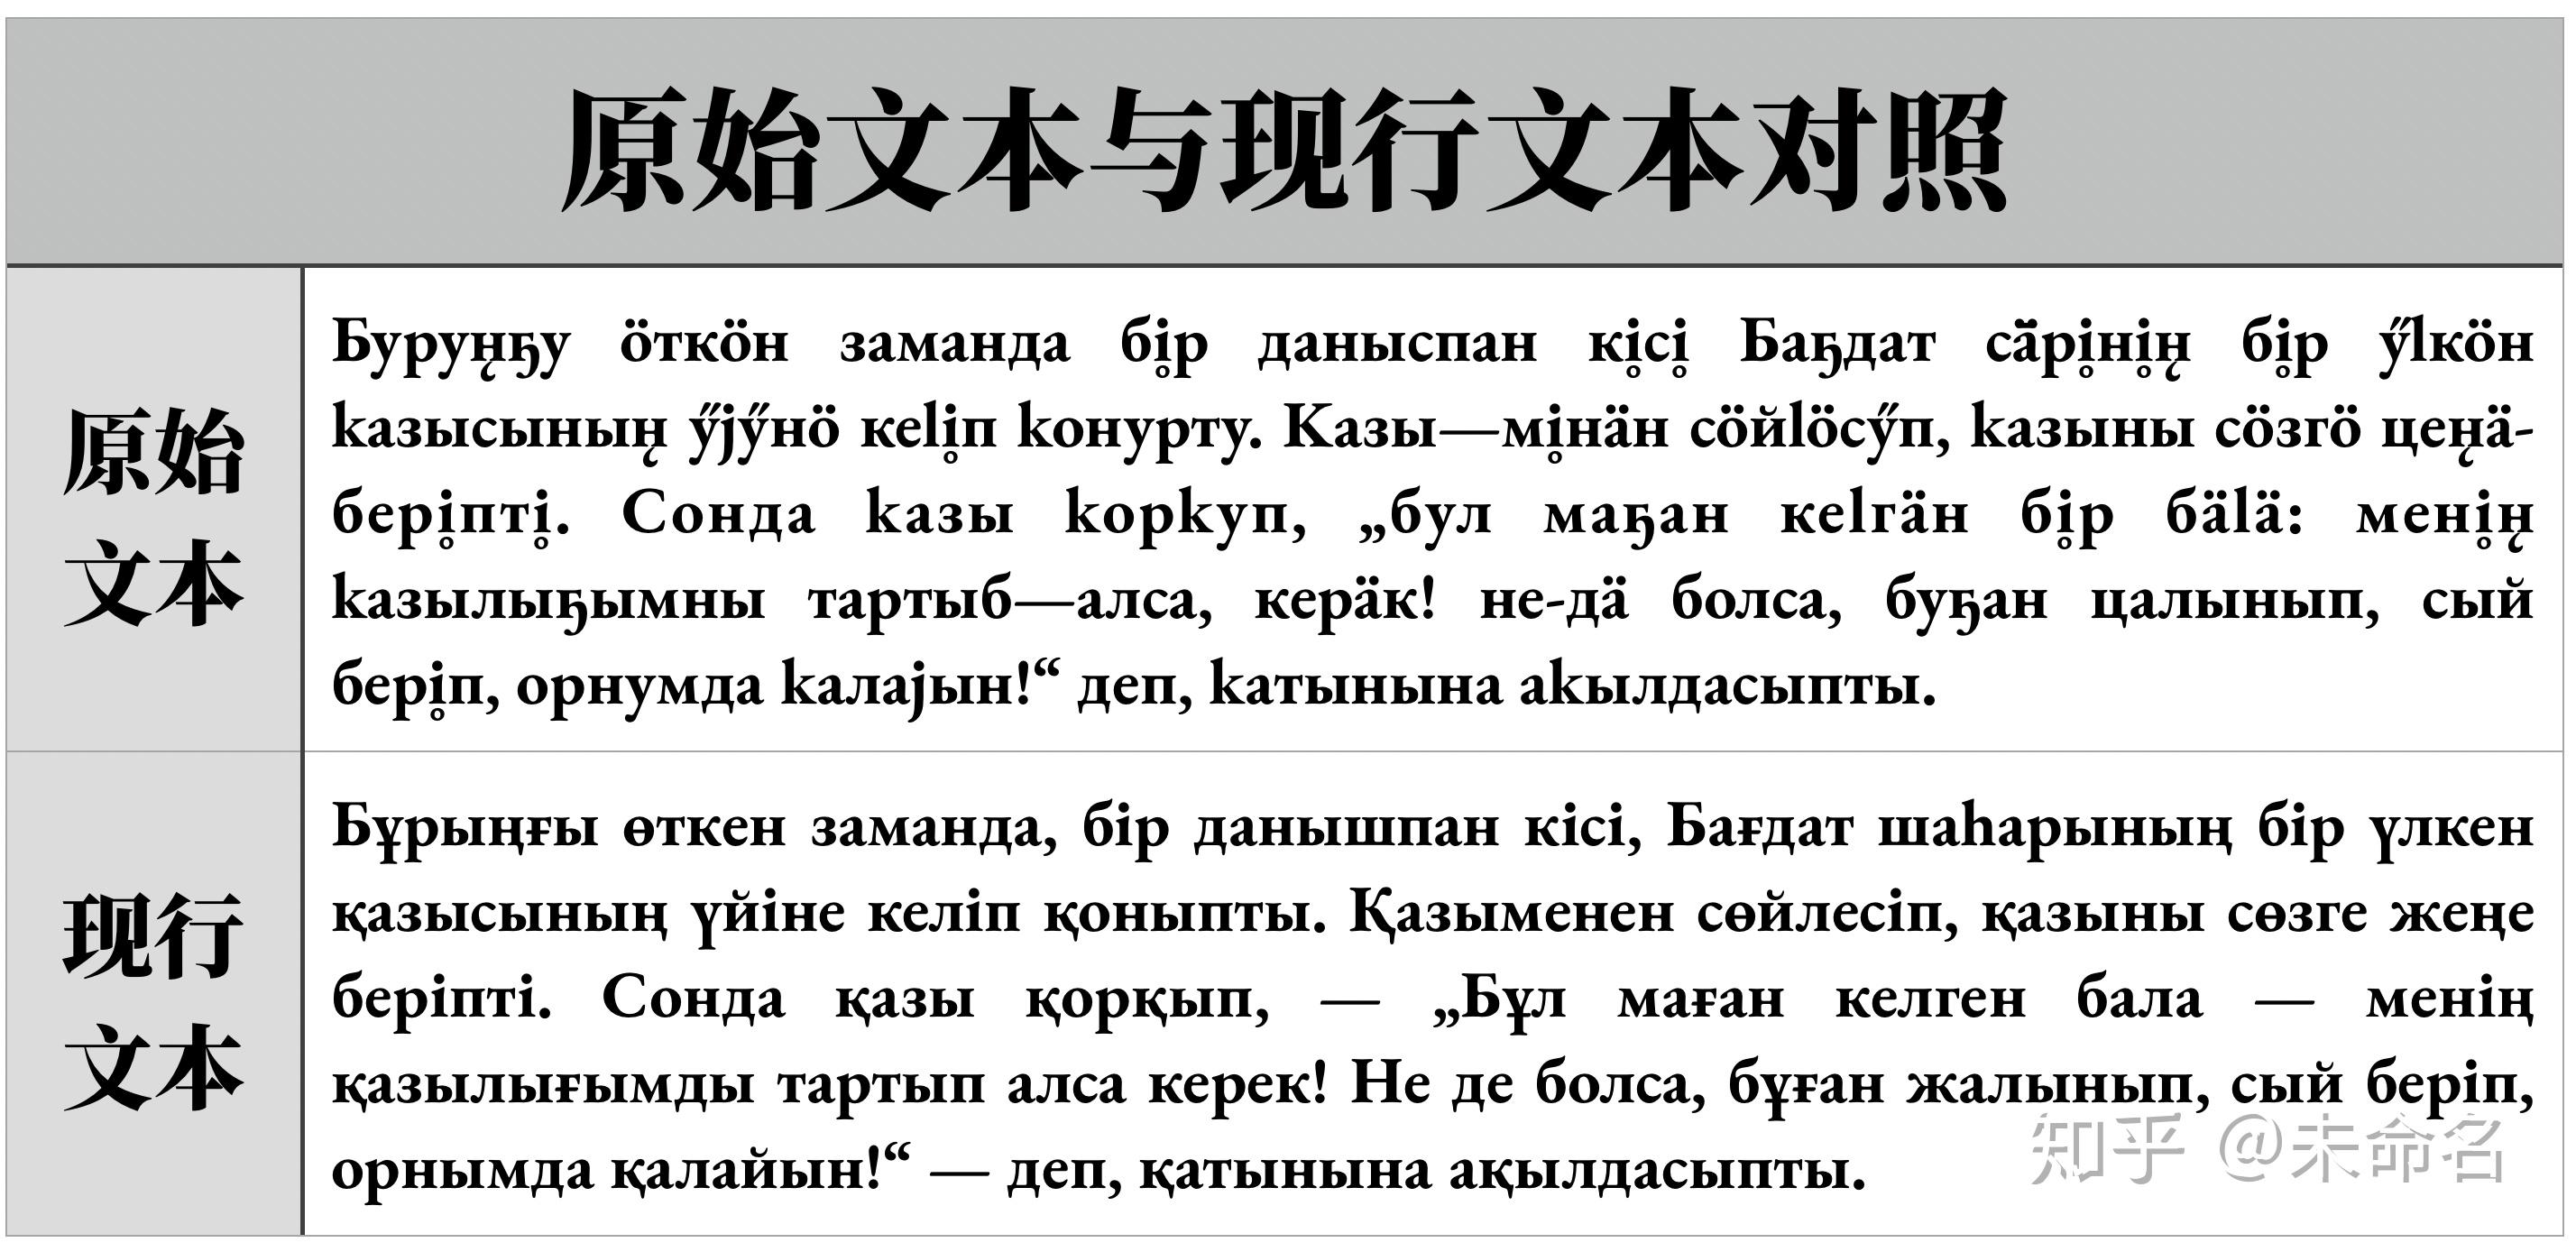 哈萨克语输入法图片